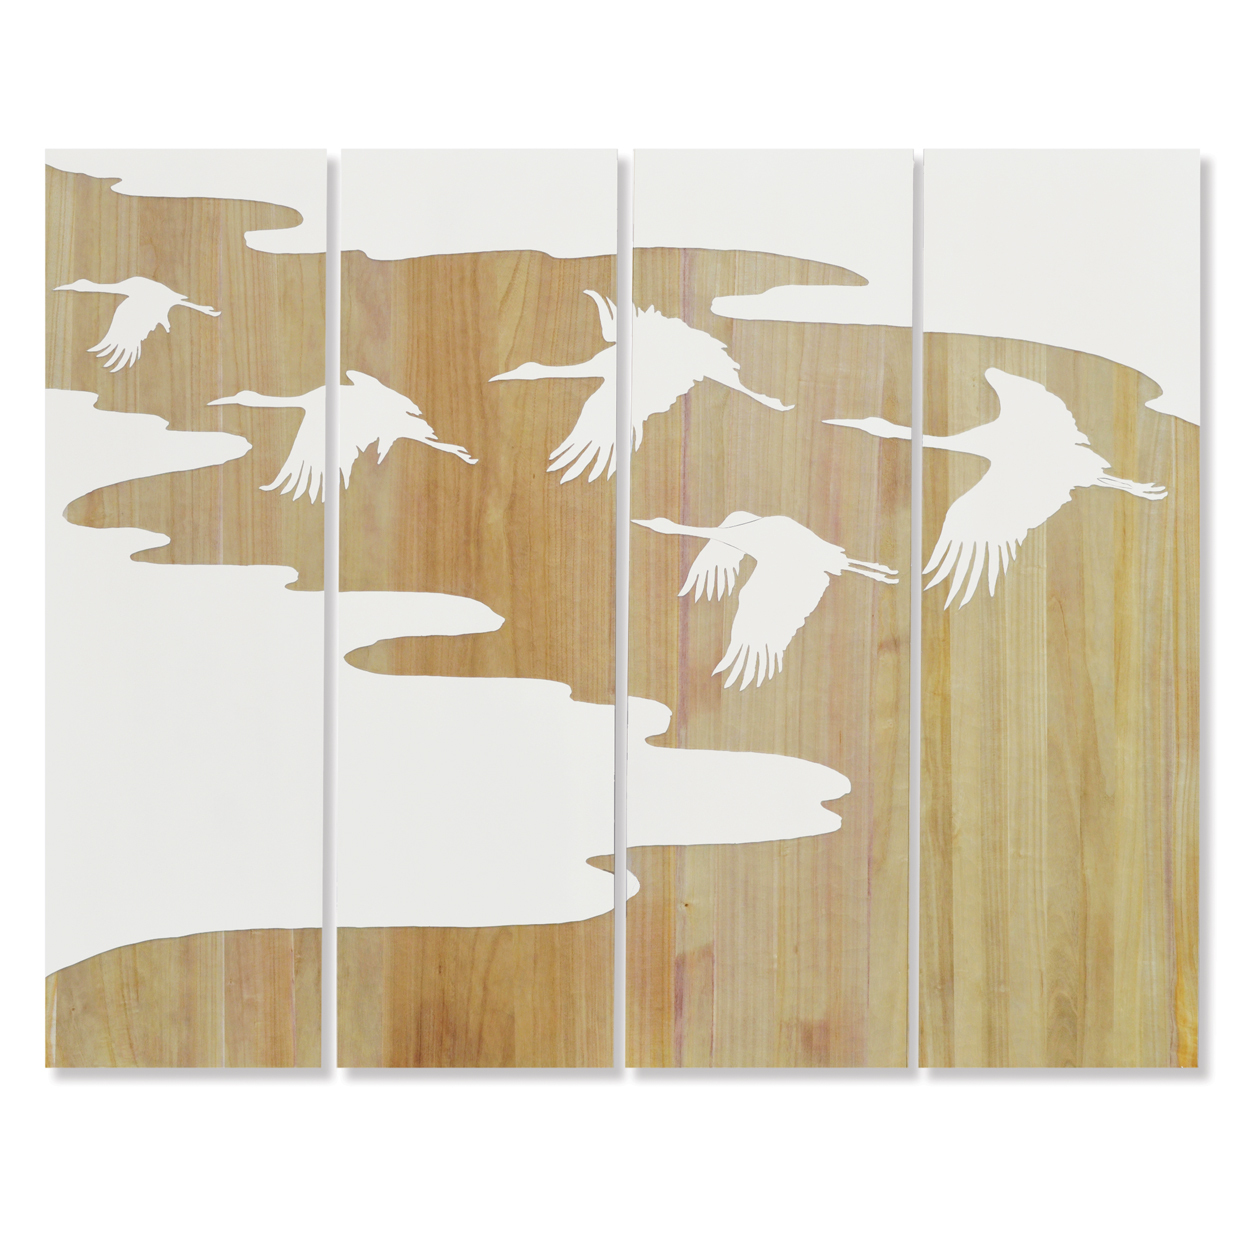 1793-05 FLYING BIRDS WALL DECOR S/4. Бренд: Palecek (USA). Настенный декор